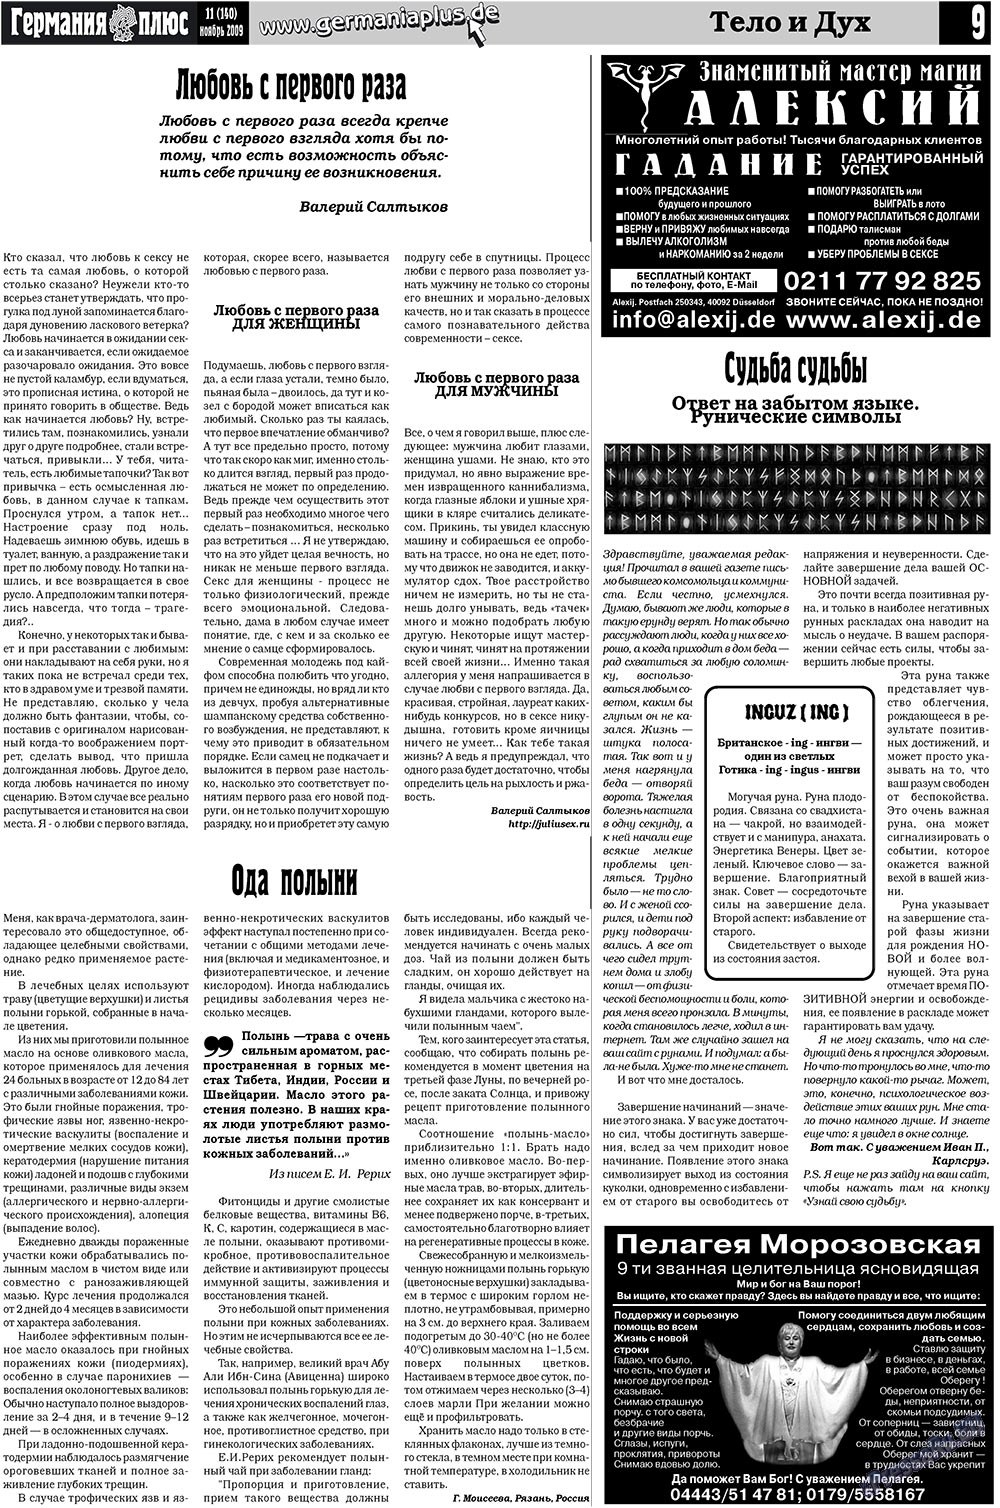 Германия плюс (газета). 2009 год, номер 11, стр. 9